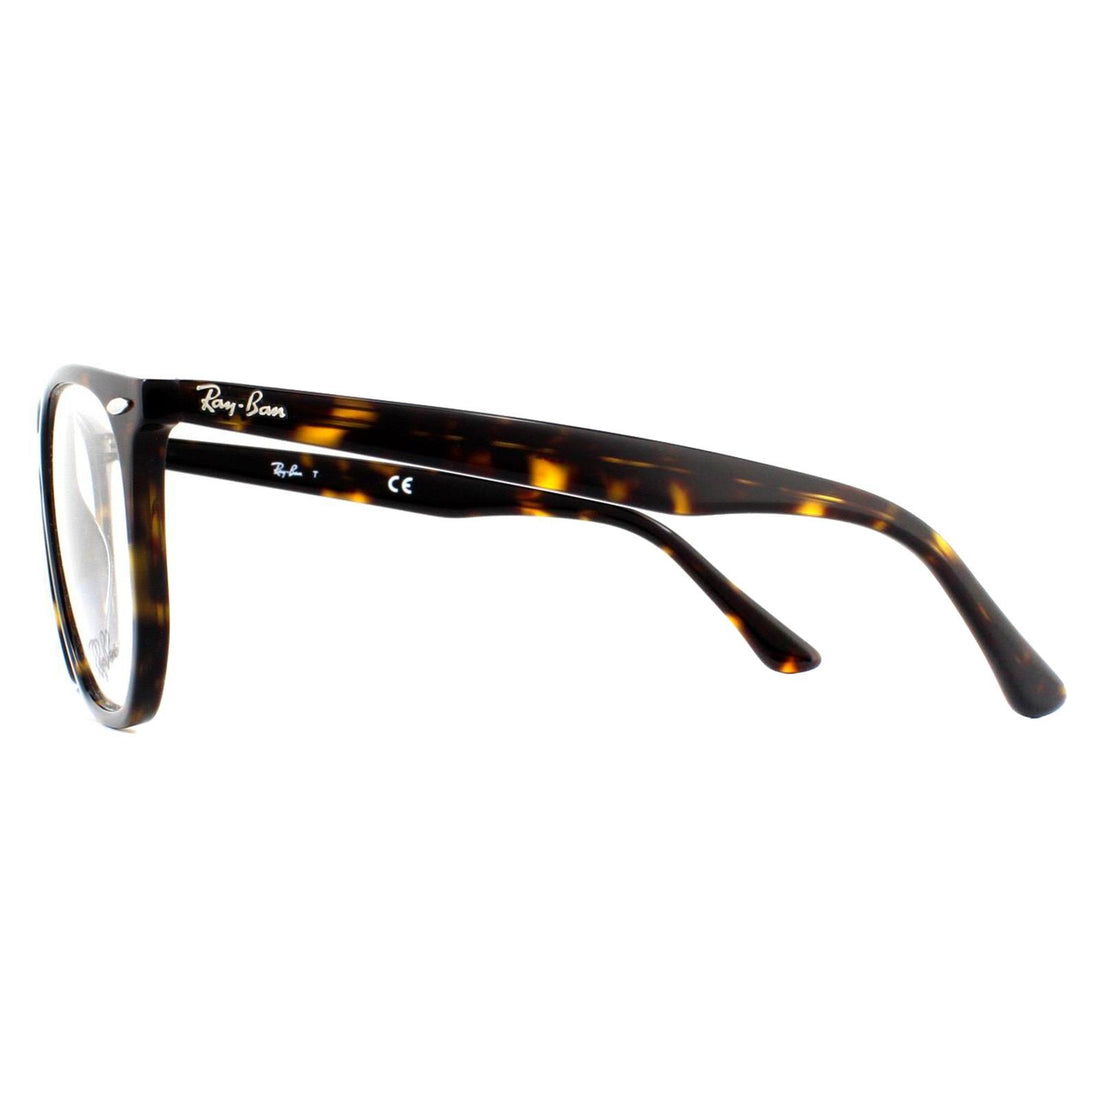 Ray-Ban 7151 Hexagonal Glasses Frames